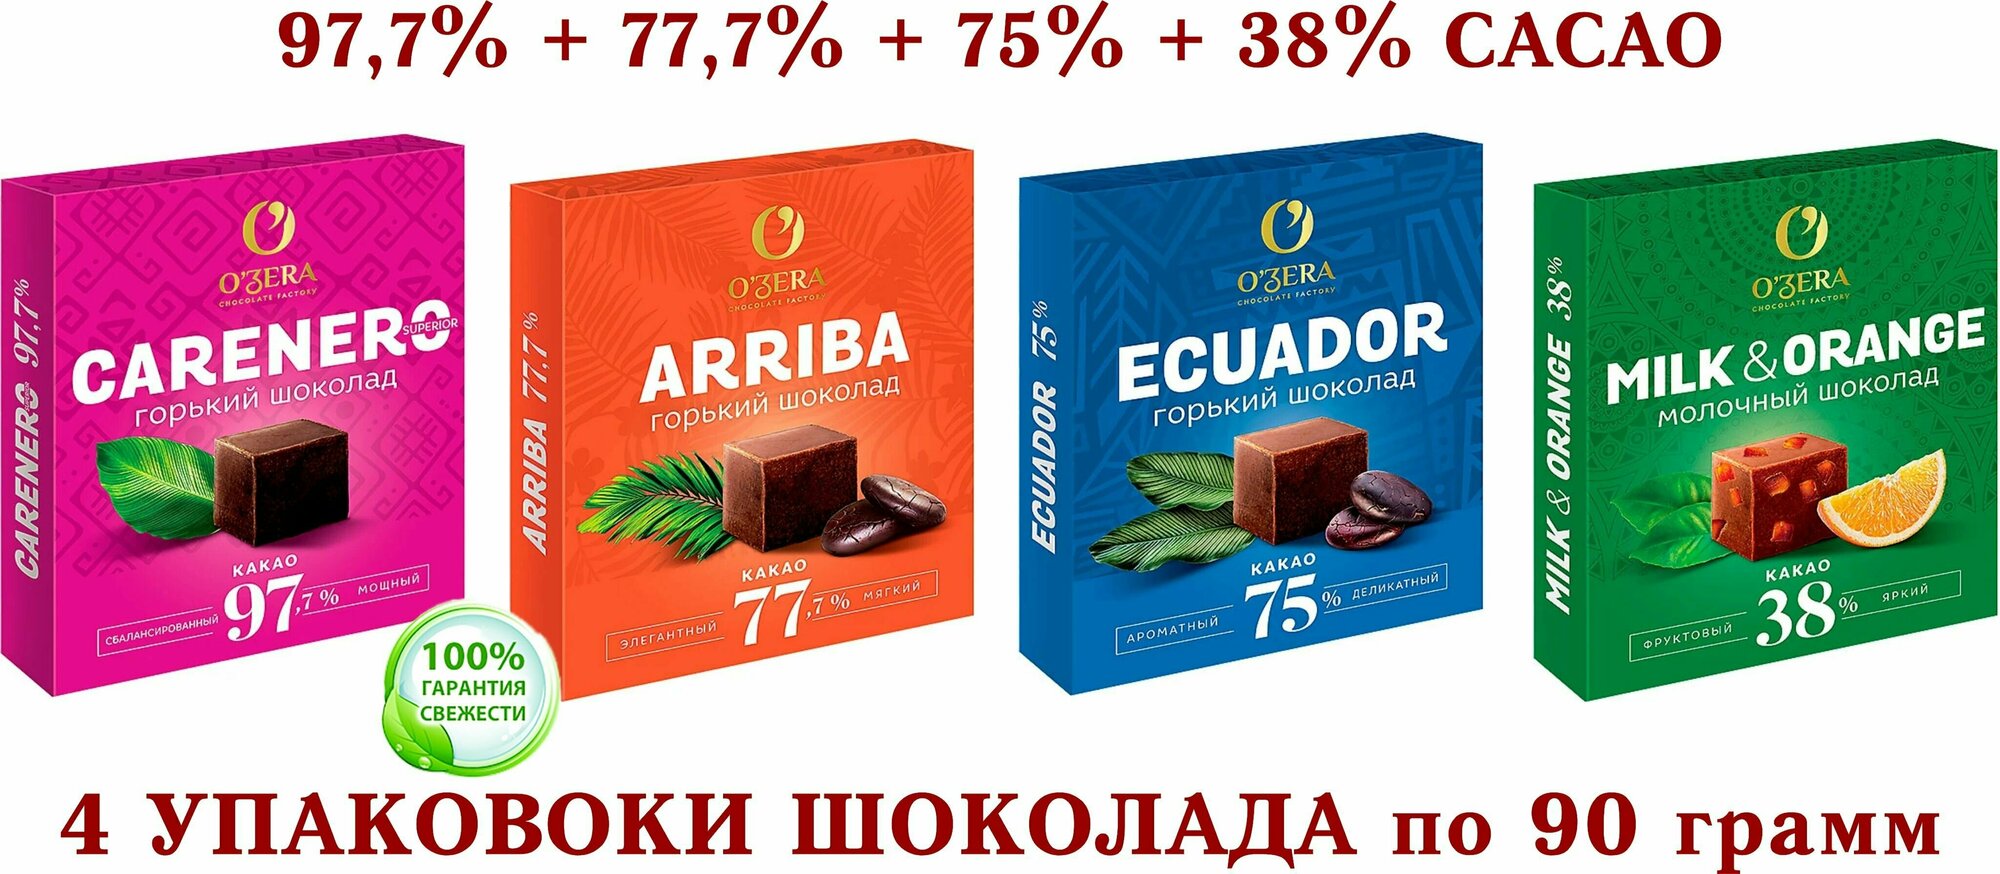 Шоколад OZERA ассорти-Carenero SuperioR 97,7 %+молочный с апельсином OZera Milk&Orange 38%+ECUADOR 75%+Arriba-77,7%-KDV-4*90 гр.